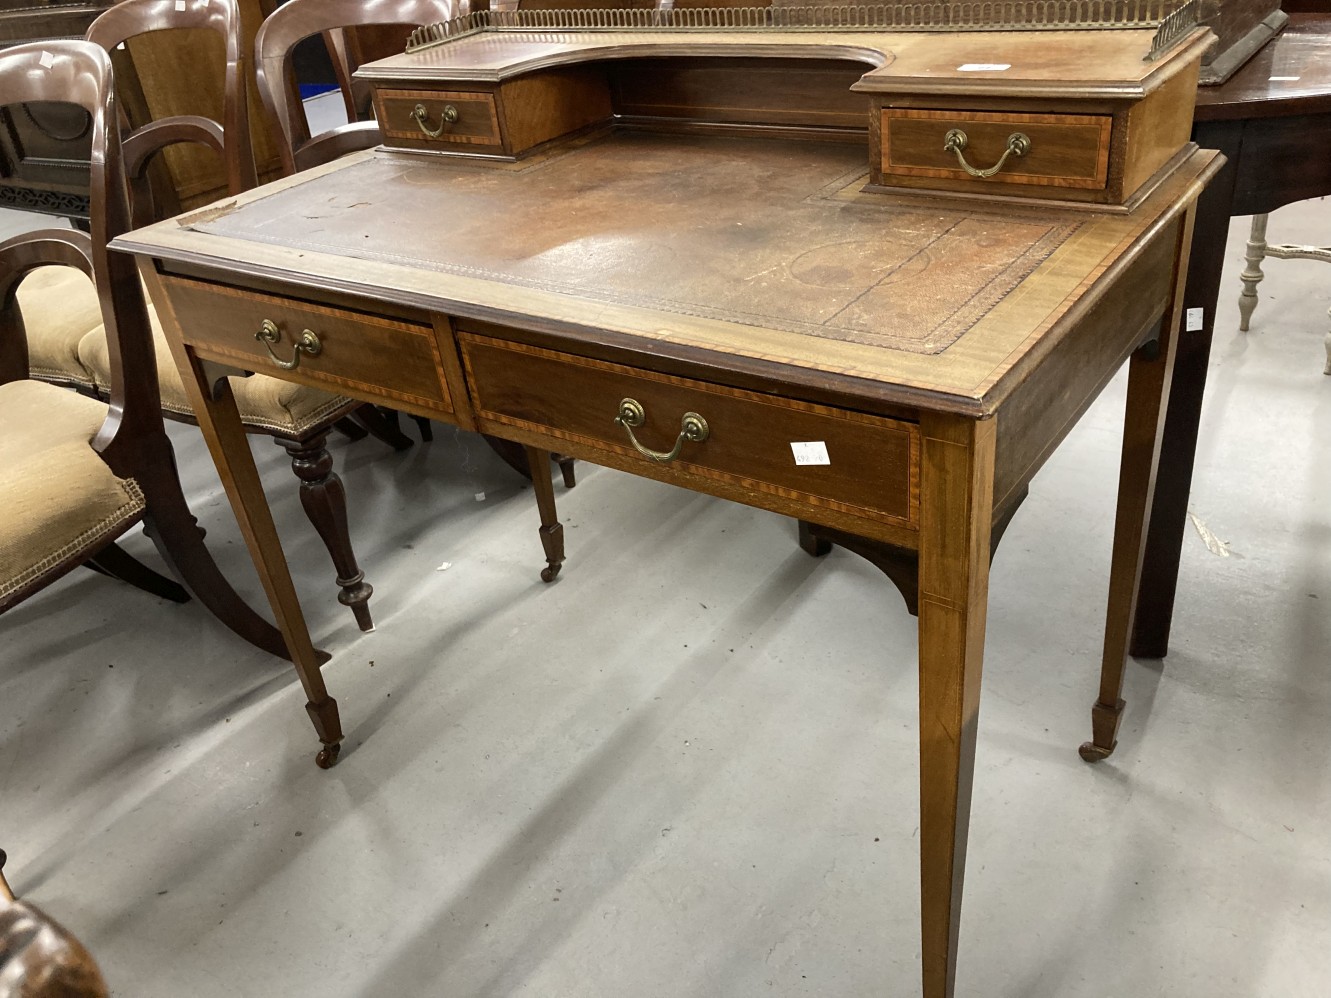 Edwardian mahogany writing desk with satinwood crossbanding and boxwood stringing, raised